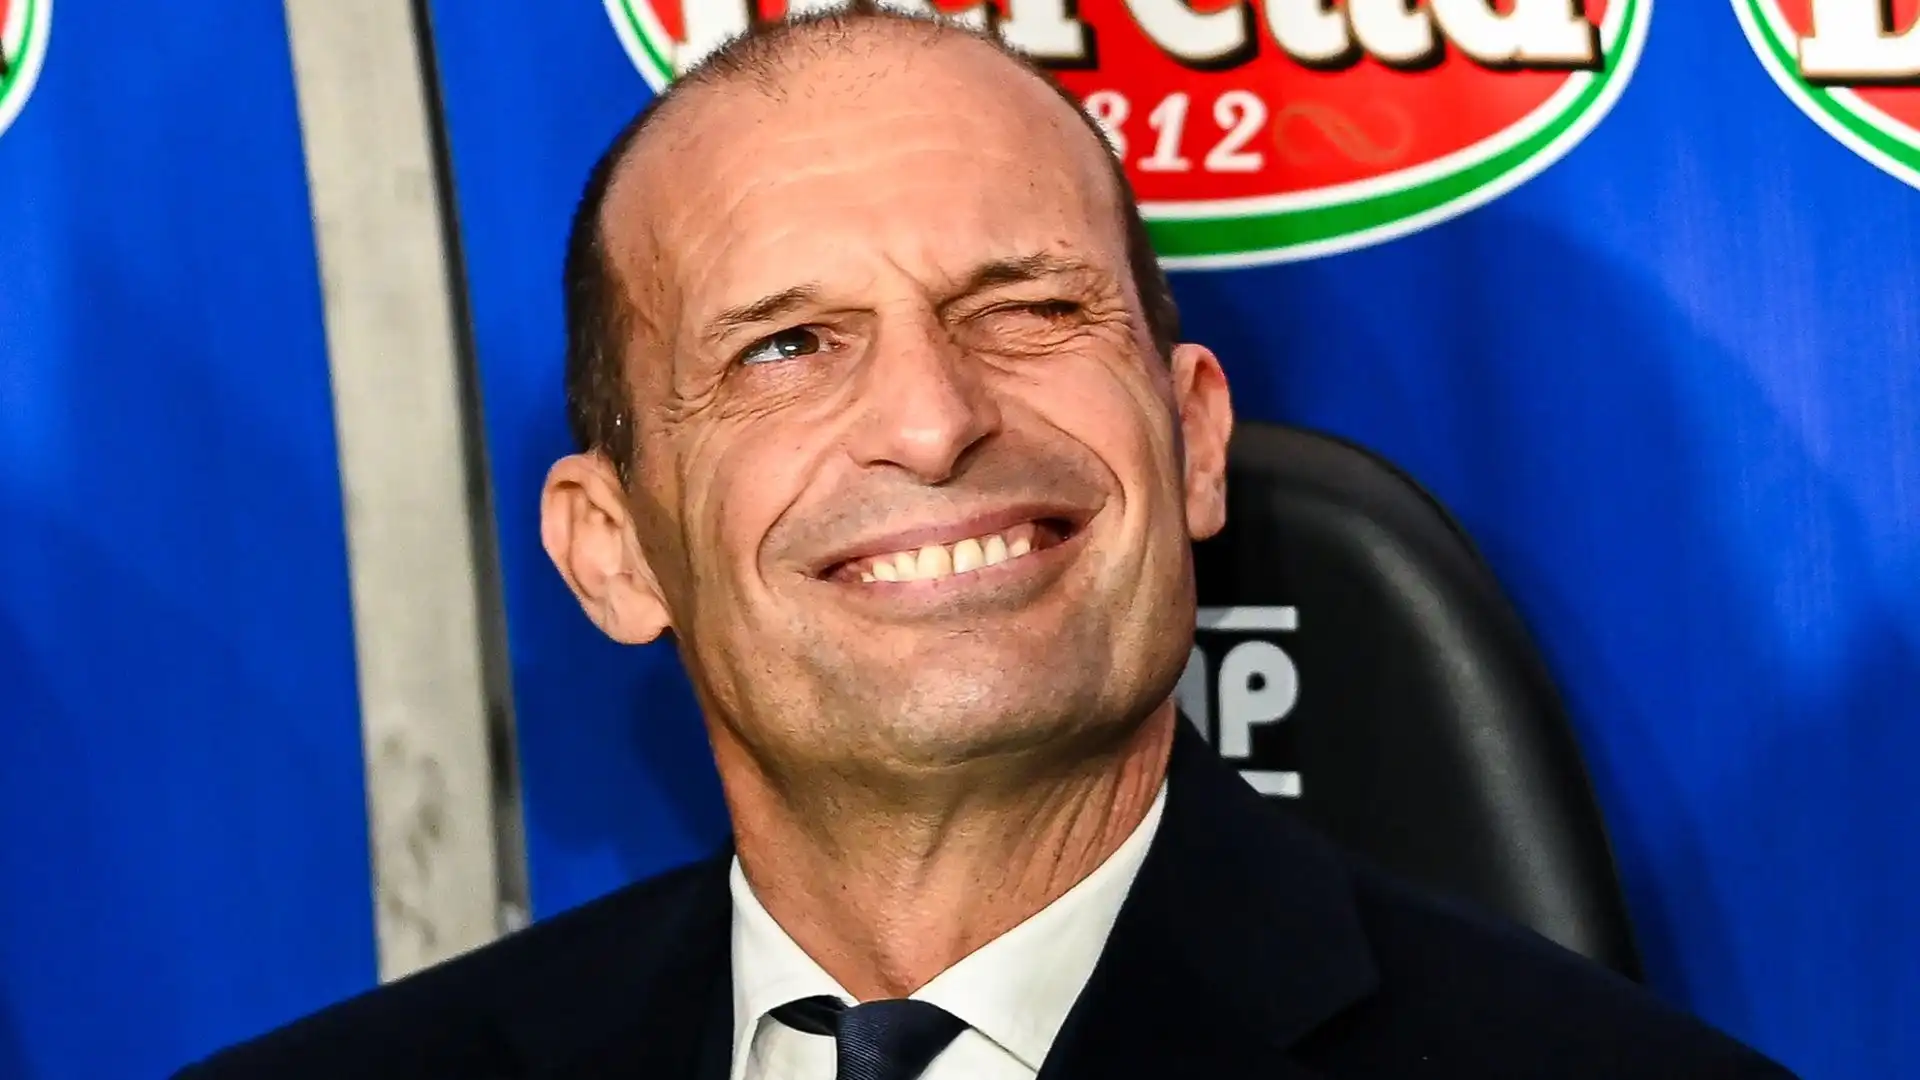 Il tecnico della Juve ha dichiarato che l'Inter è costruita per vincere lo scudetto, e che sia più attrezzata dei bianconeri